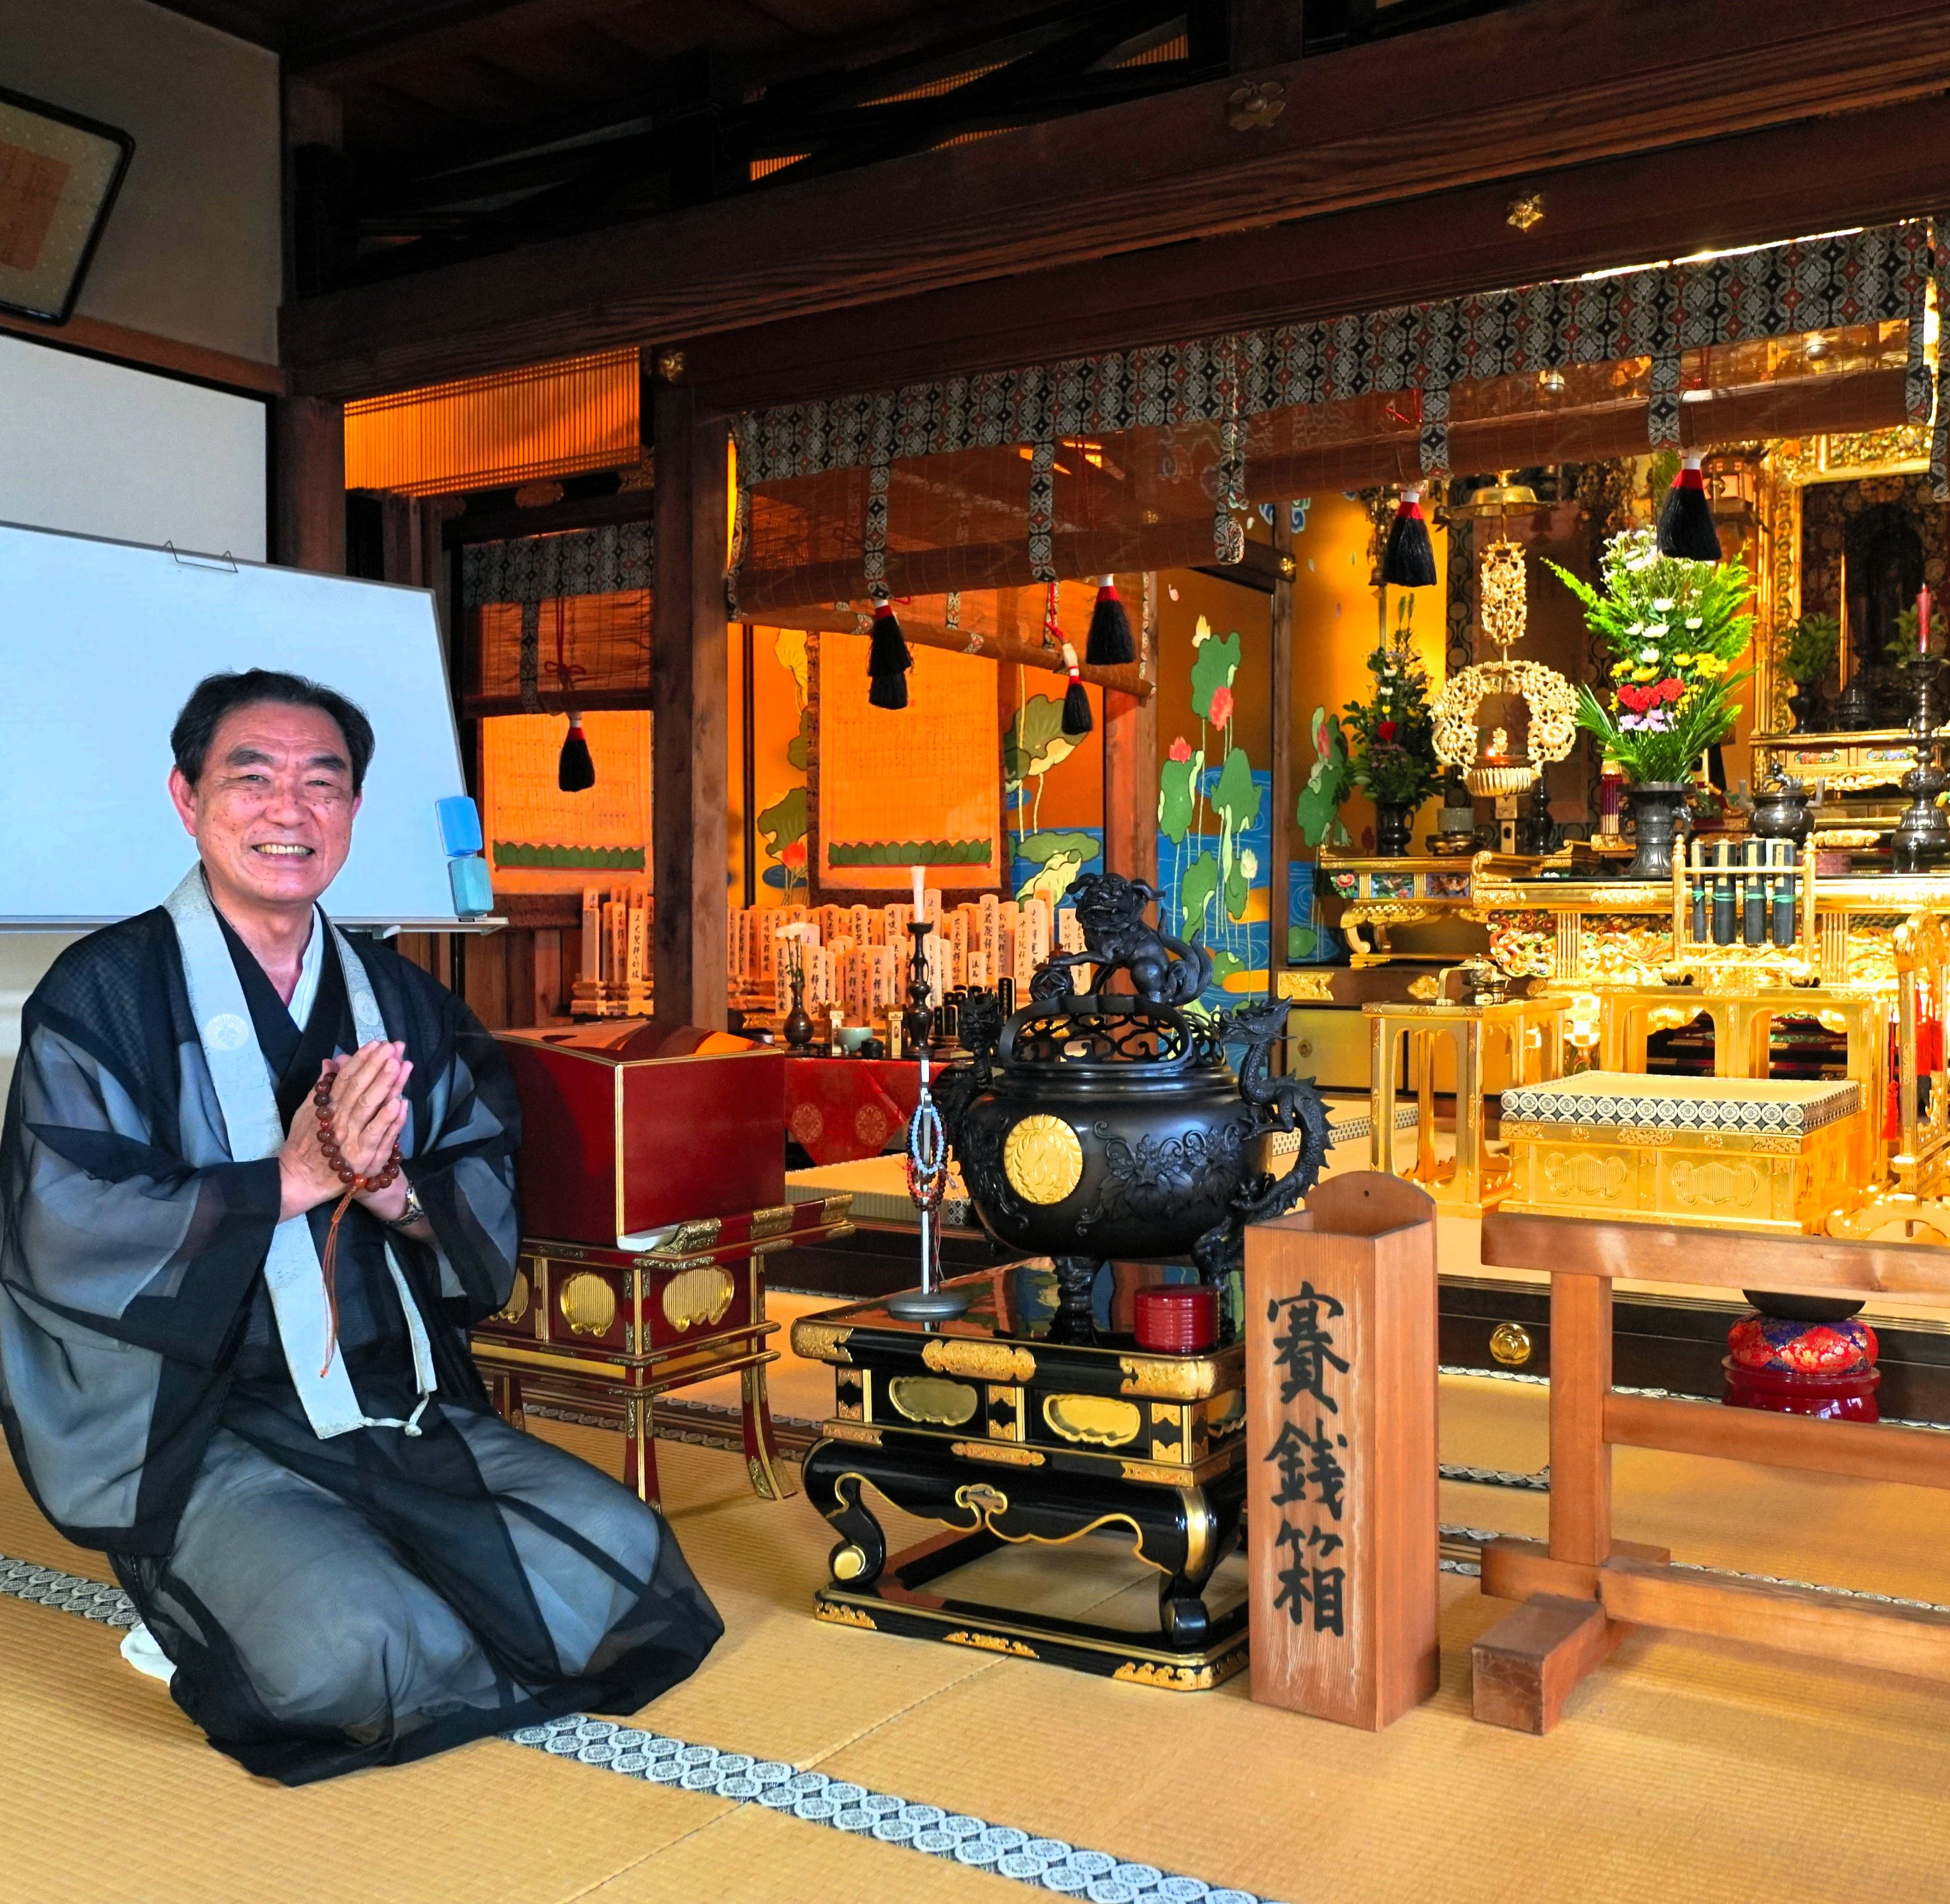 開かずの間に円山応挙、茶室に宿る親鸞の教え…秋の京都は初公開づくし #1315